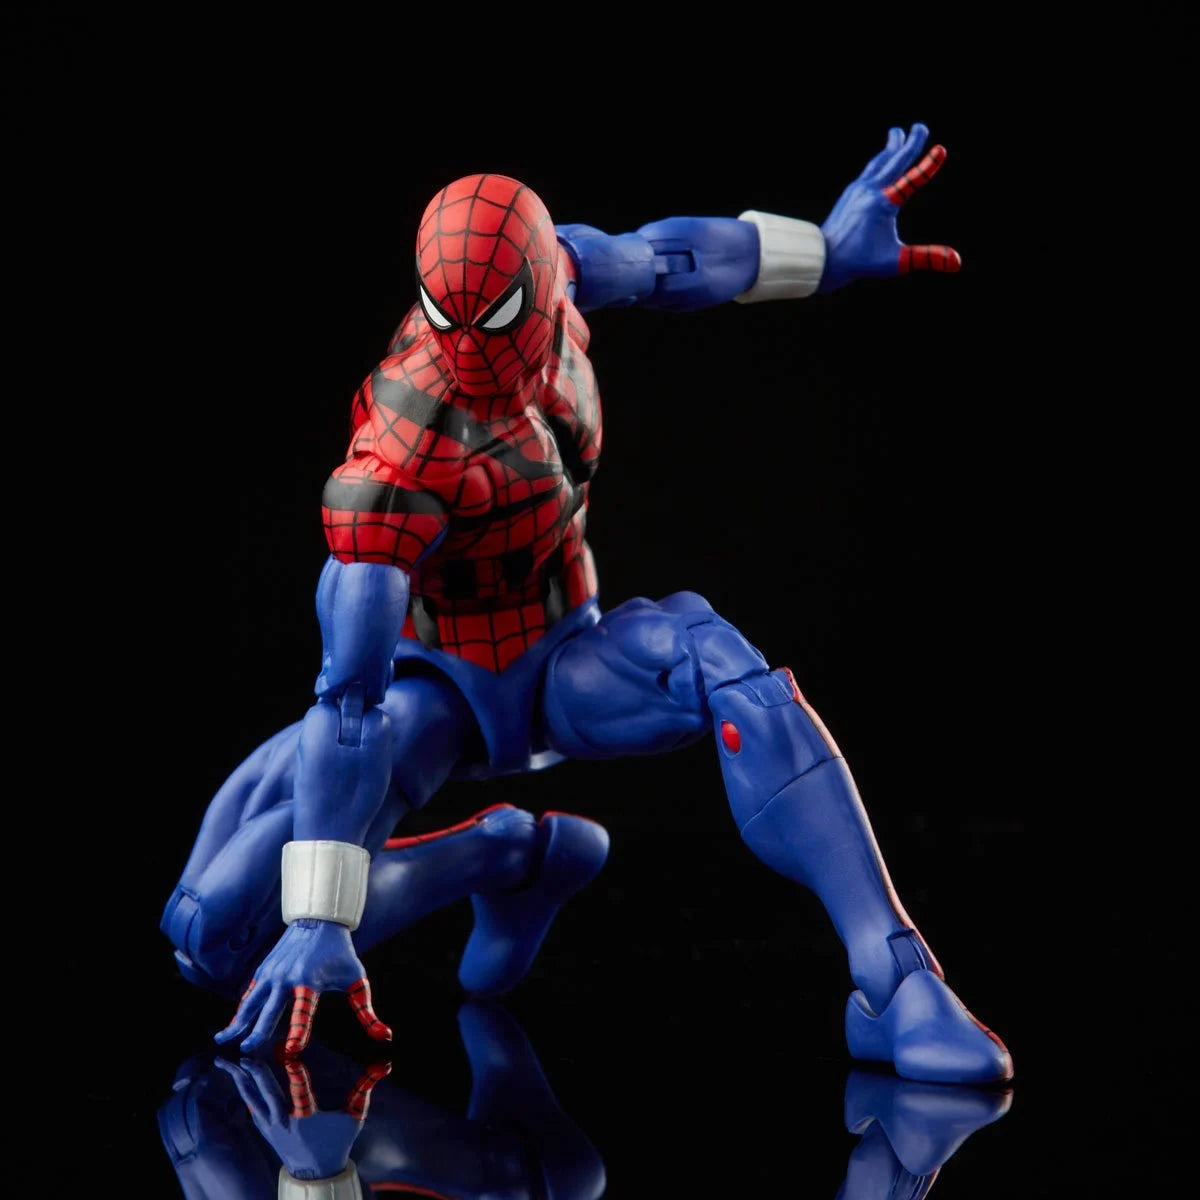 Retro Collection - Spider-Man - Ben Reilly Spider-Man